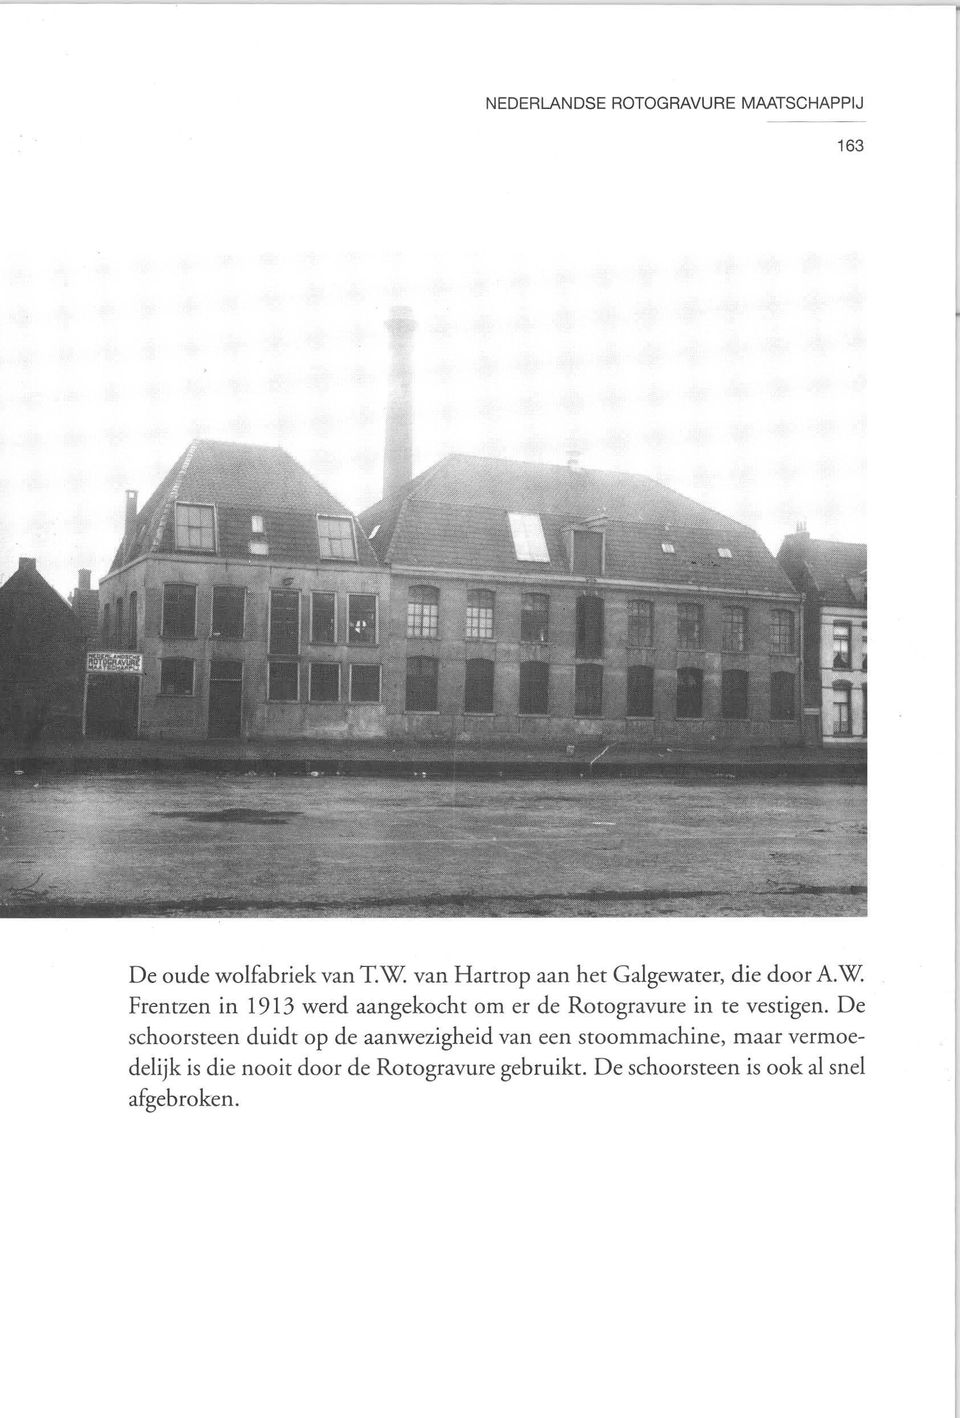 W Frentzen in 1913 werd aangekocht om er de Rotogravure in te vestigen.